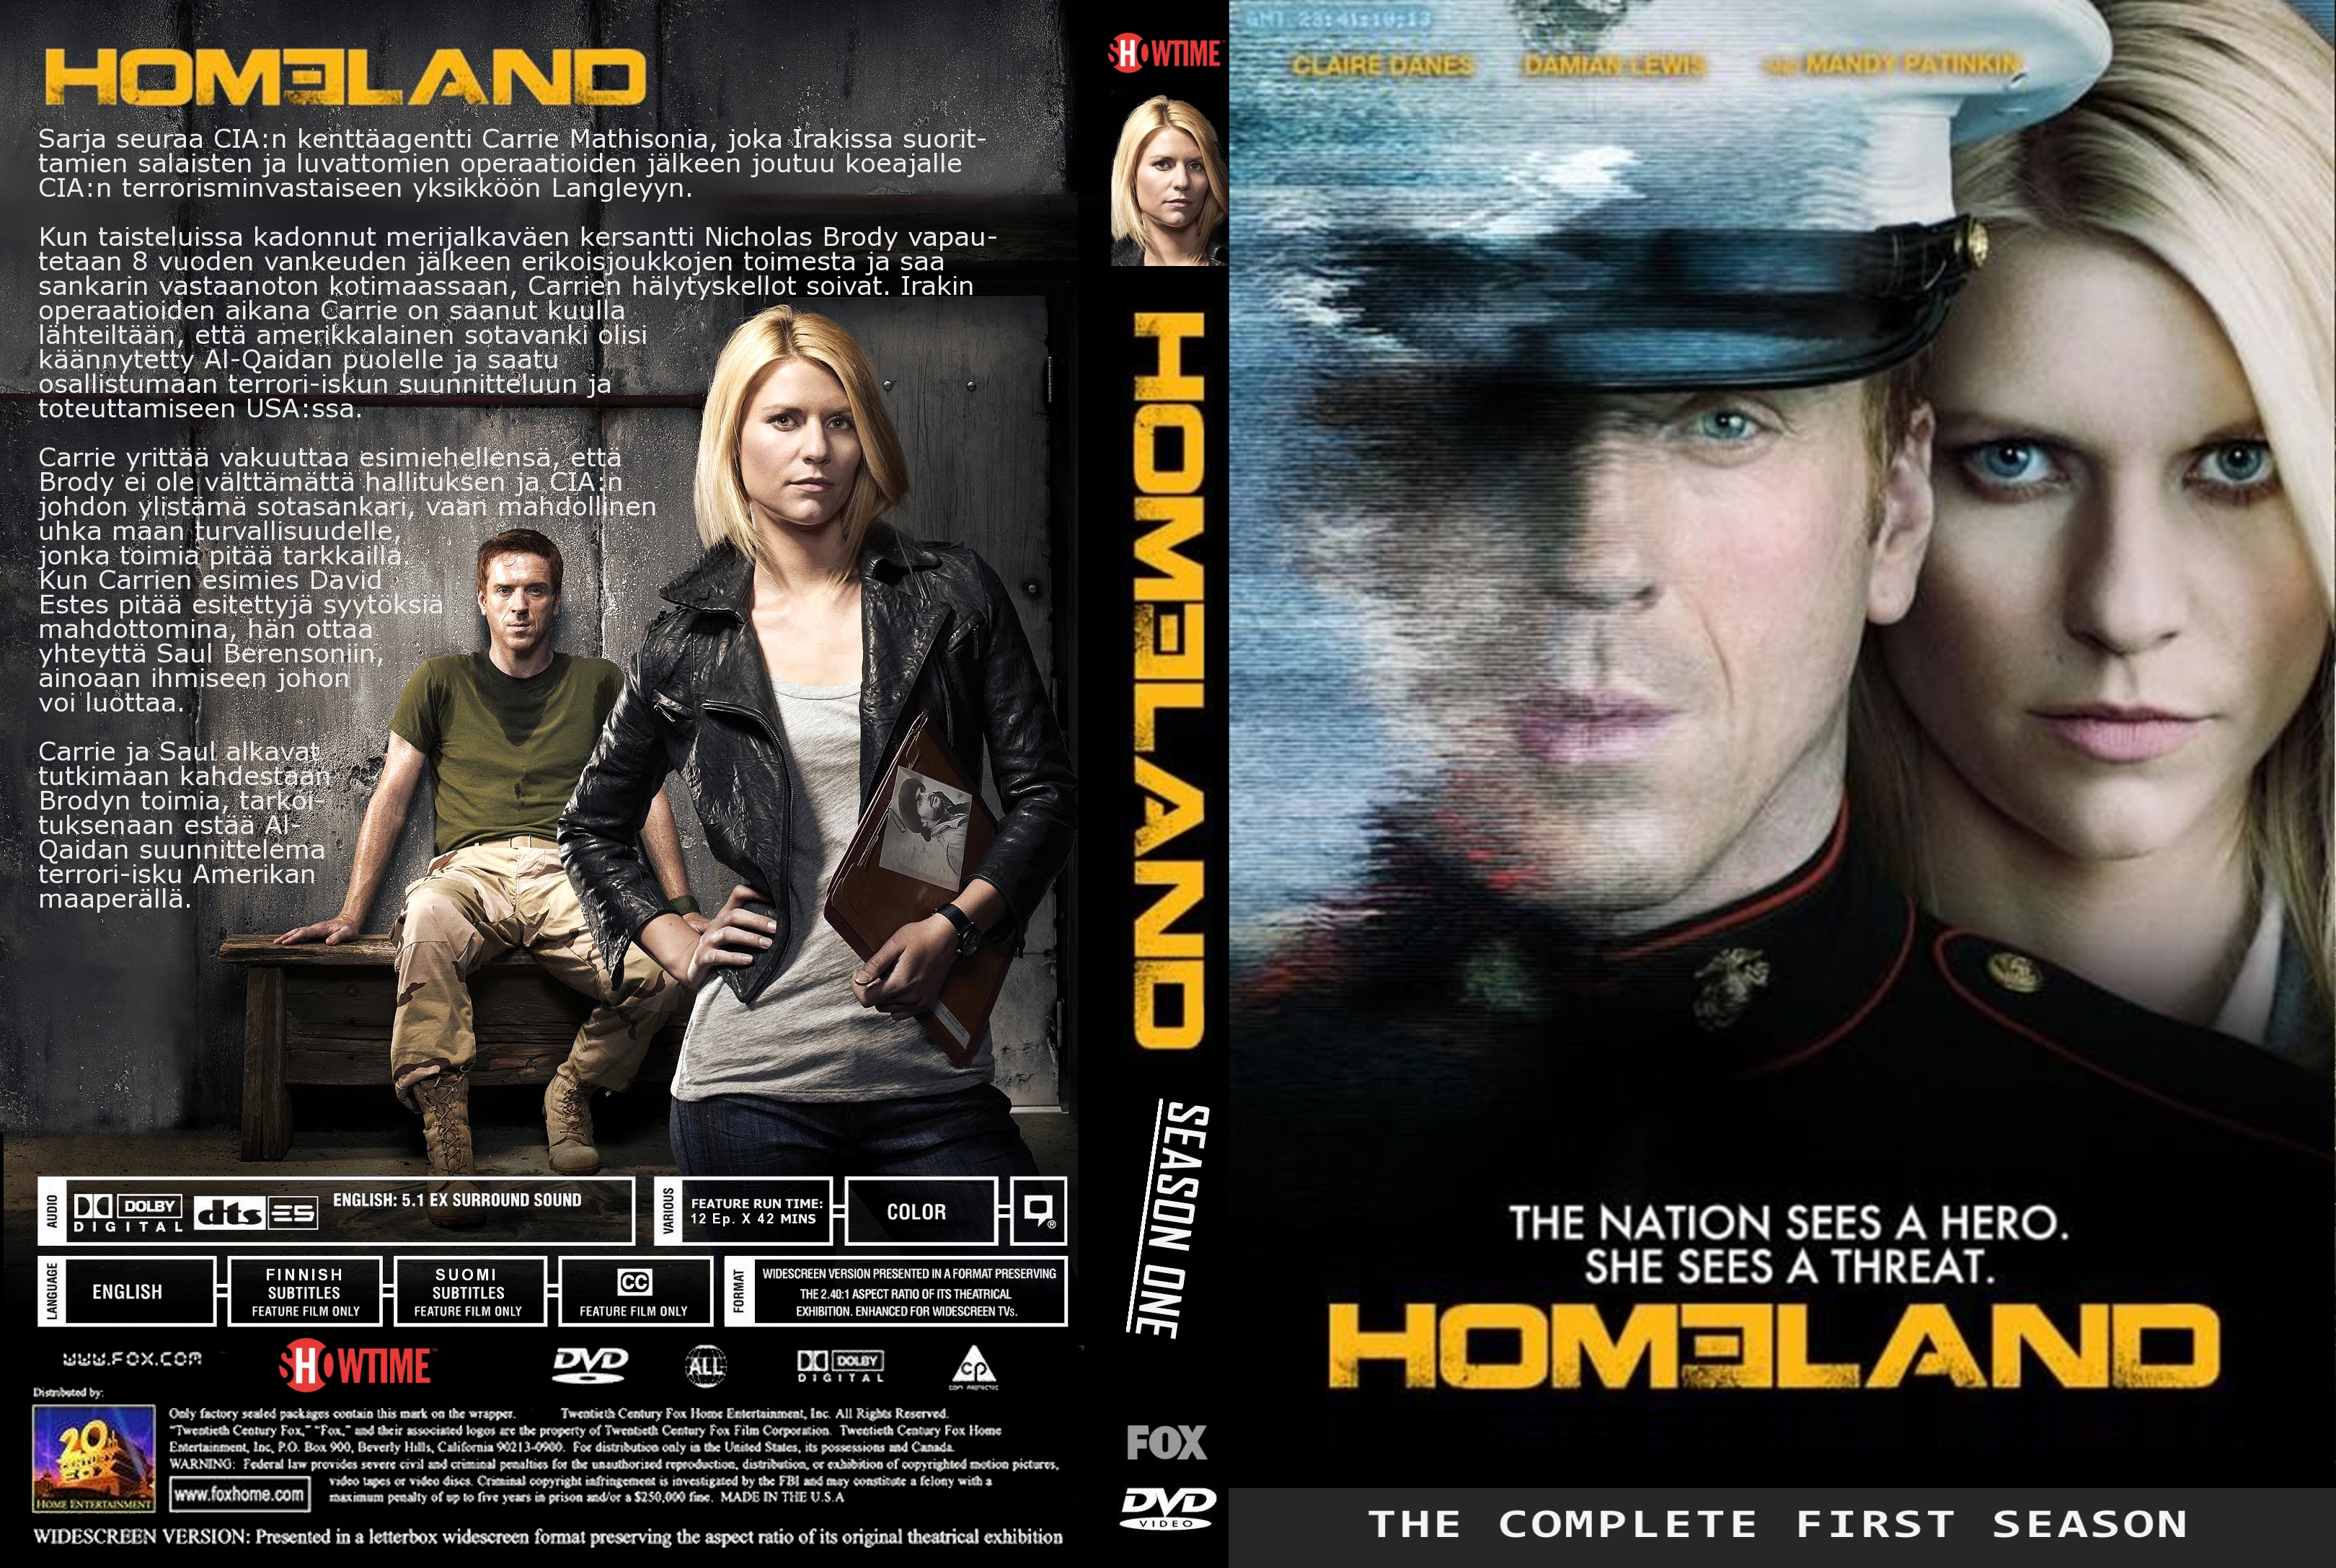 Amazoncom: Homeland: Season 1 Blu-ray: Movies TV